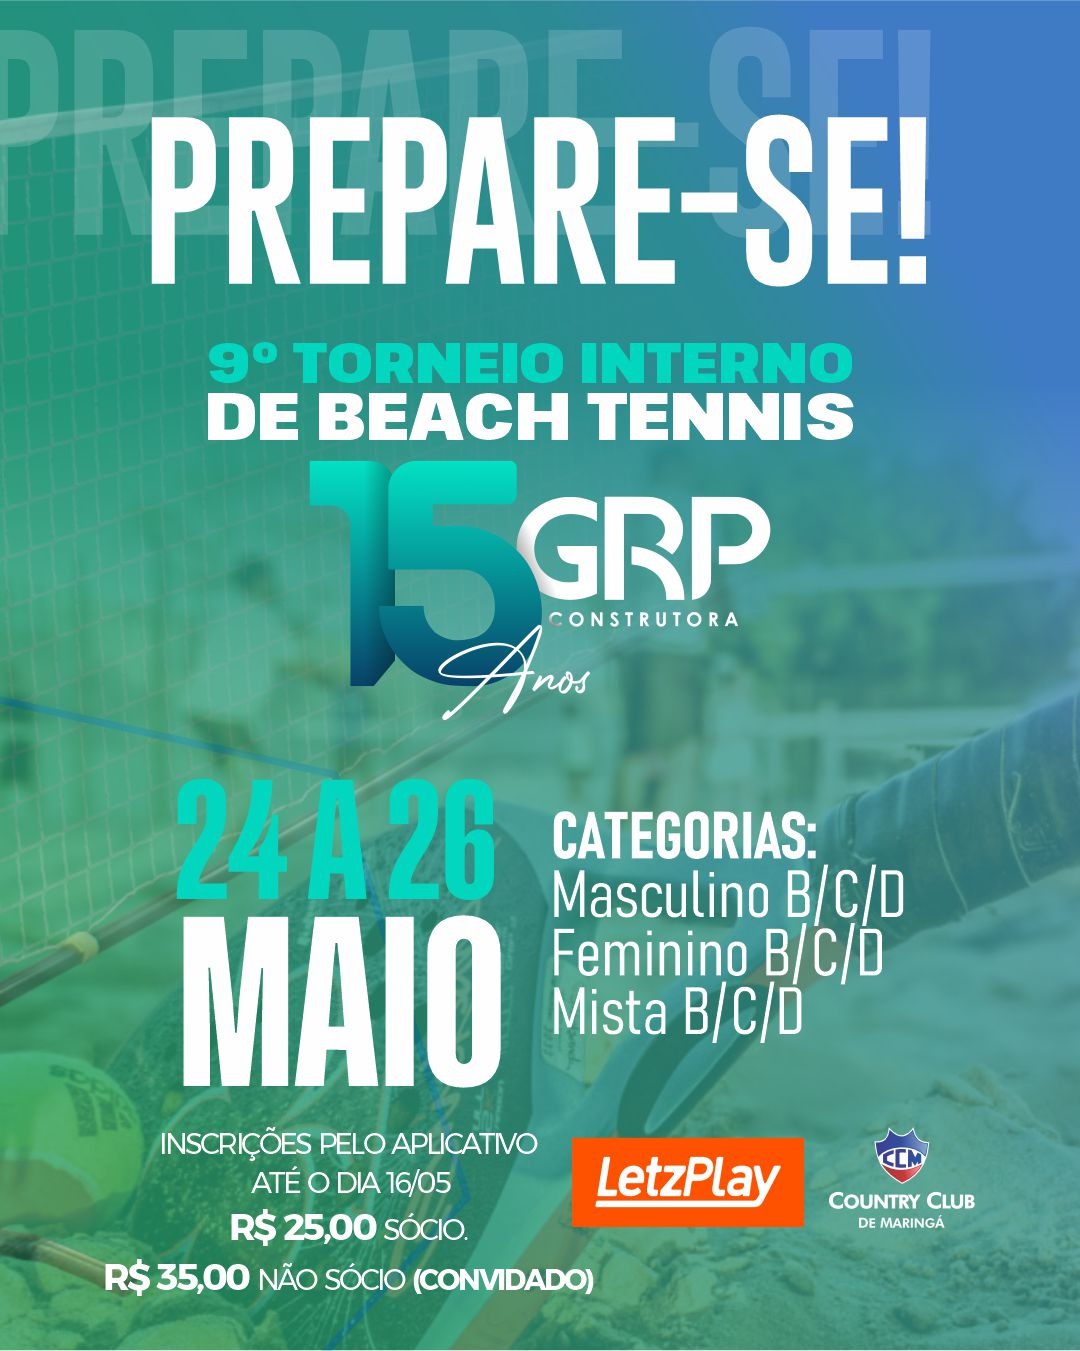  9 Torneio interno de Beach Tennis 15 anos GRP Construtora.